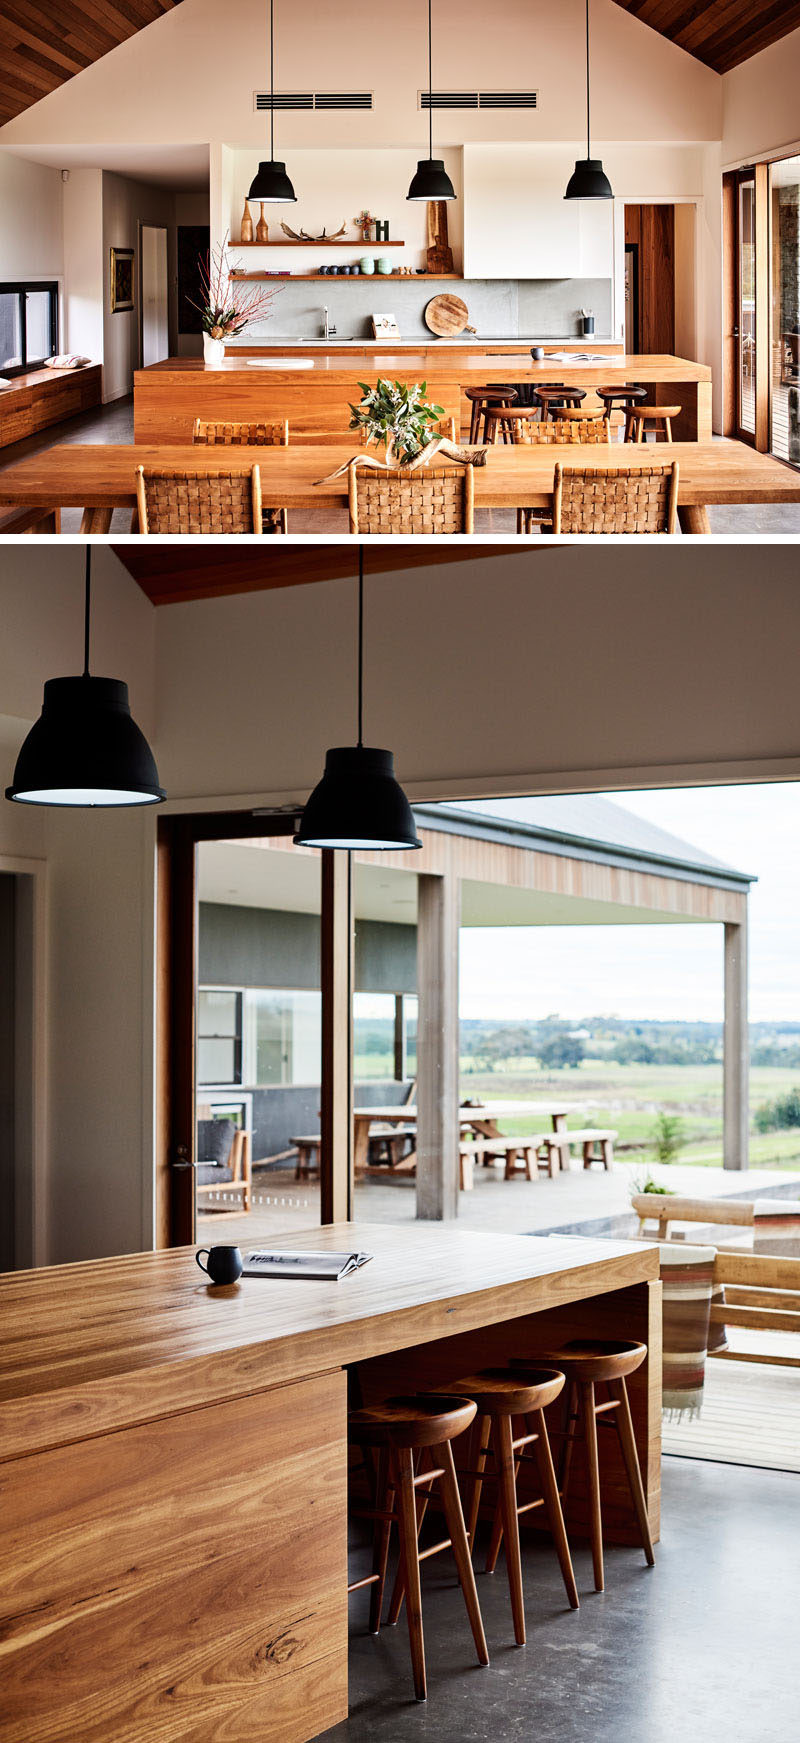 В этой современной кухне открытые деревянные стеллажи контрастируют с белыми стенами, а на большом деревянном острове есть места для шести человек. # МодернКухня # ДревесинаКухня #InteriorDesign #KitchenDesign